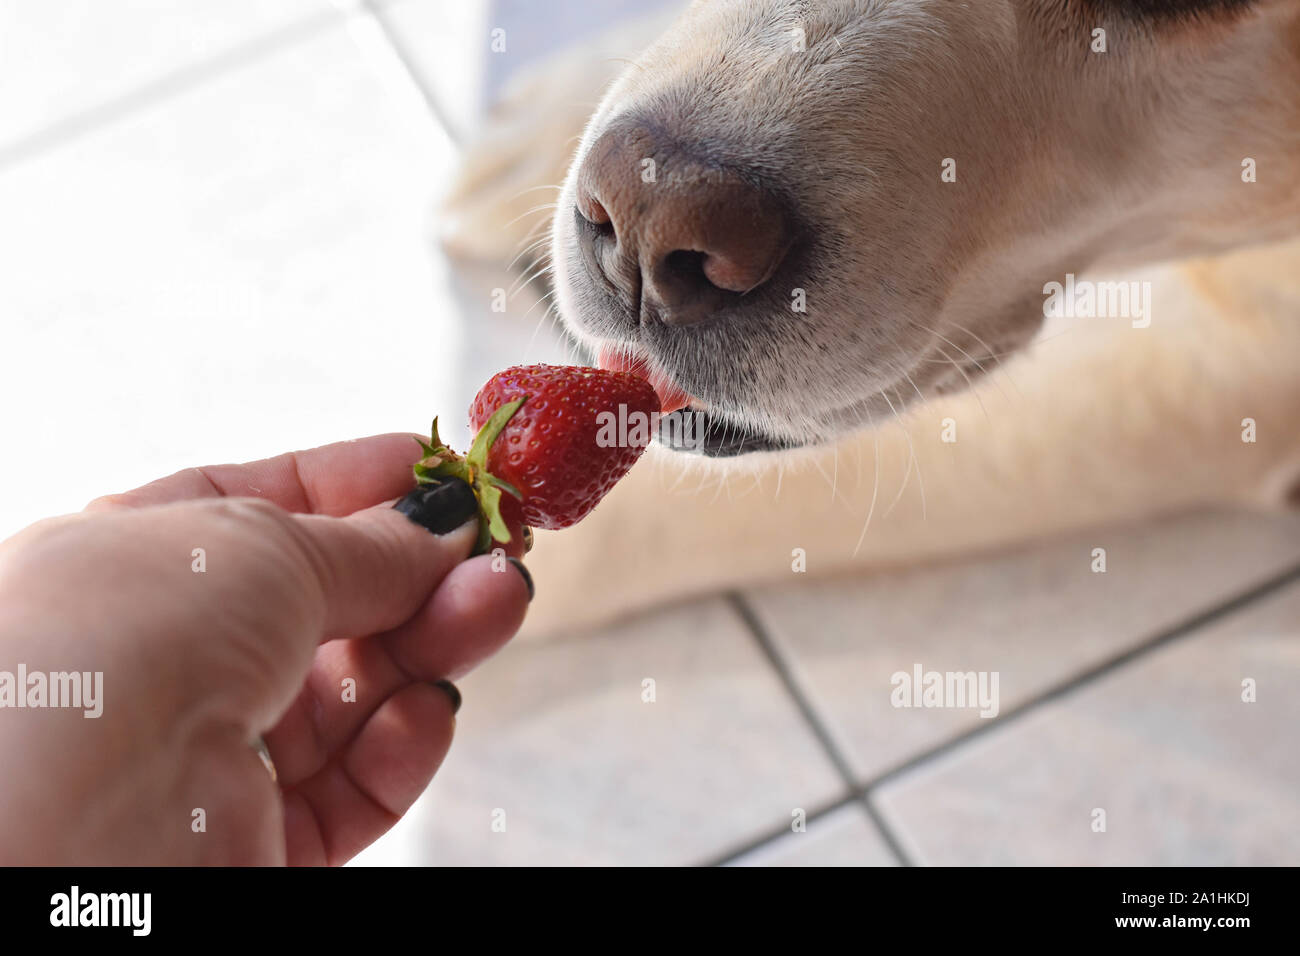 Weißer Labrador Retriever Hund essen eine Erdbeere Obst aus eigner Hand/konzeptionellen Bild des Vertrauens und der Freundschaft zwischen Hund und Mensch Stockfoto